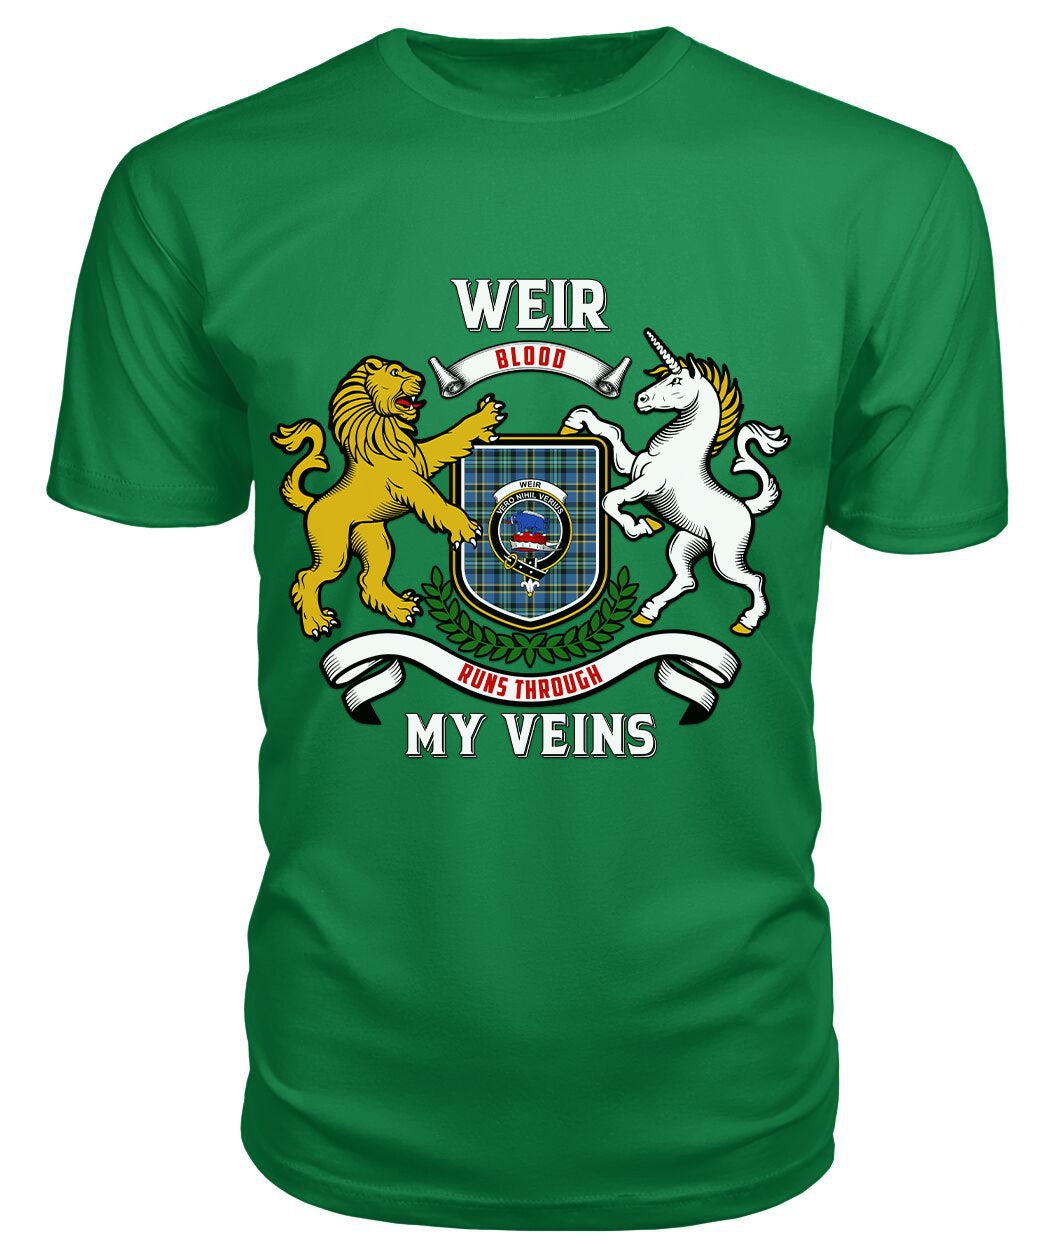 Weir Ancient Tartan Crest 2D T-shirt - Blood Runs Through My Veins Style